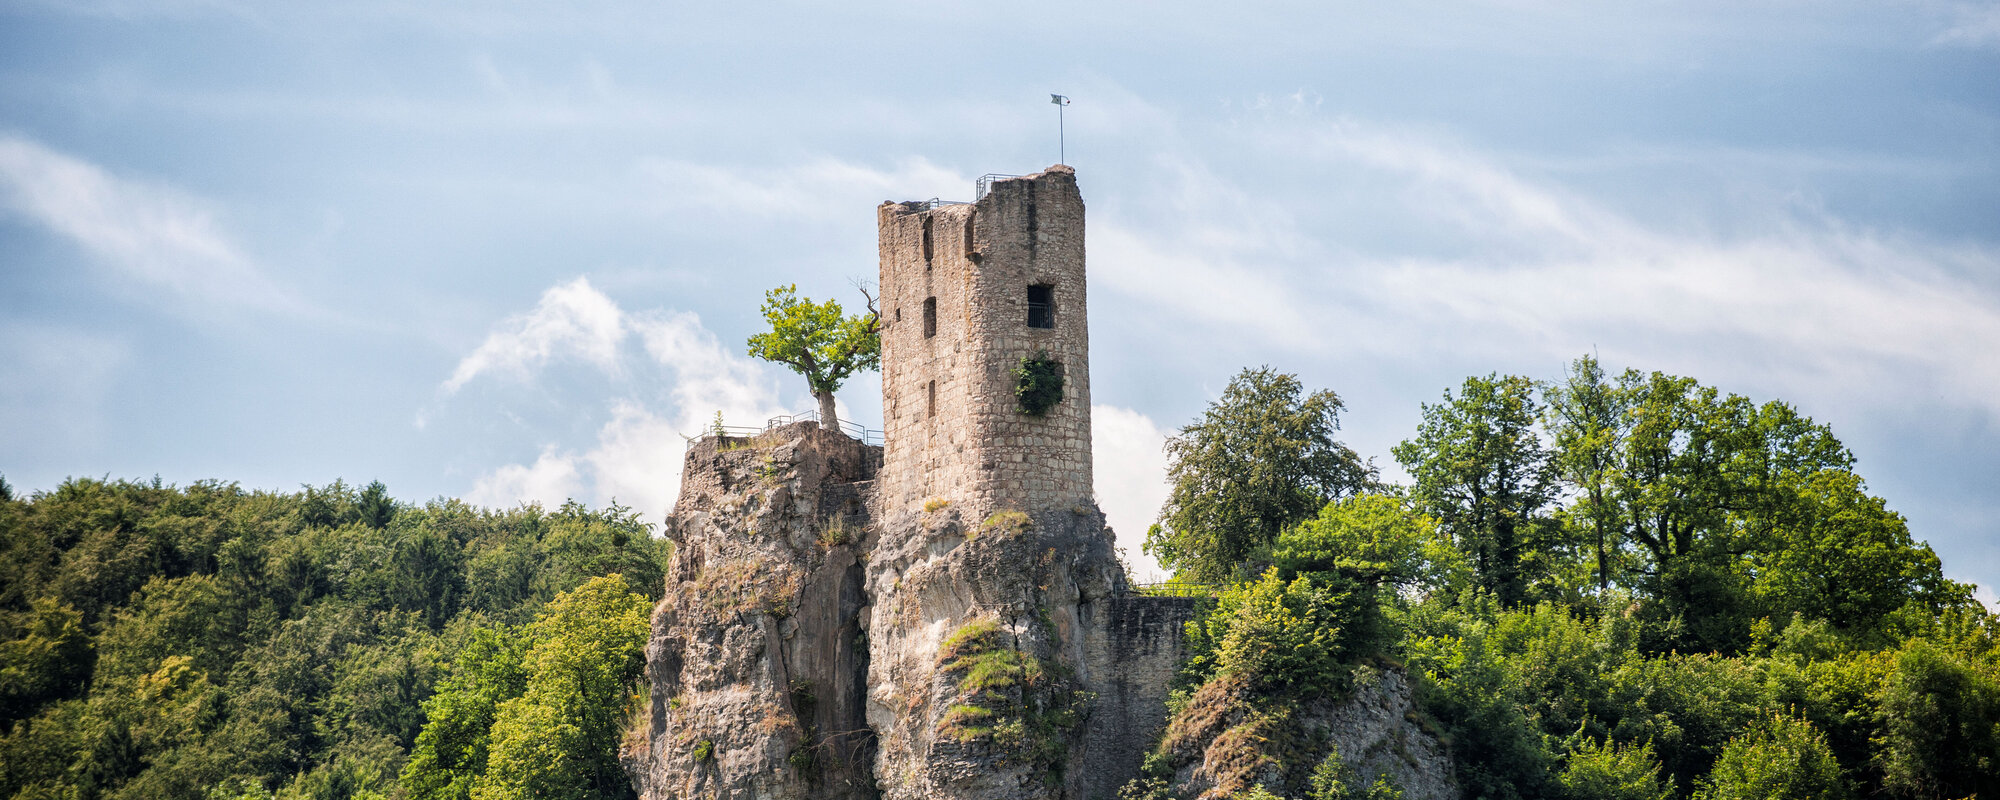 Bekannte Burg in der Fränkischen Schweiz auf einem Hügel